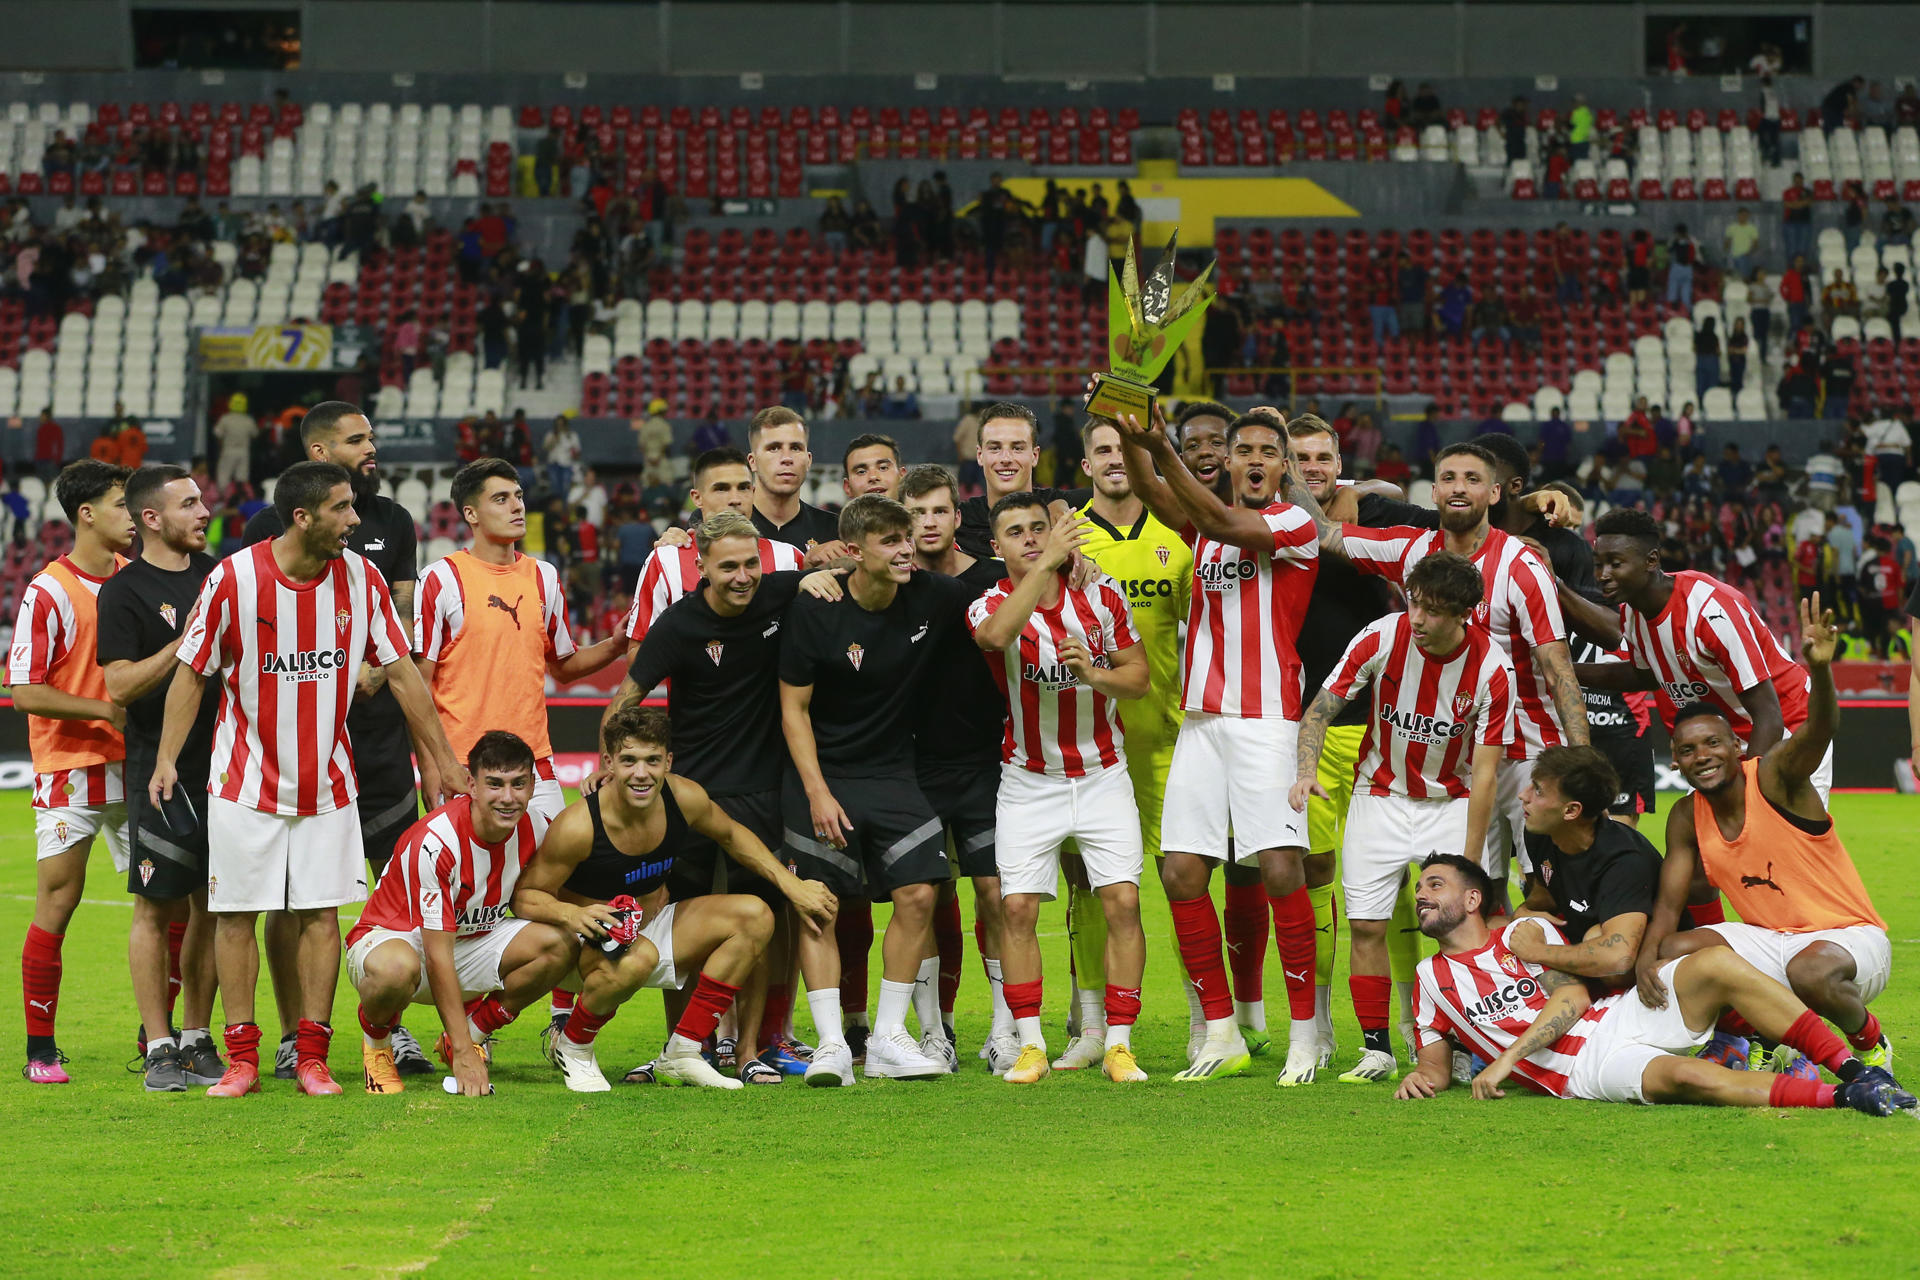 Jugadores del Sporting de Gijón en festejo con el trofeo Copa Bicentenario, durante un partido amistoso disputado contra el Atlas hoy, en el estadio Jalisco, en Guadalajara (México). EFE/Francisco Guasco